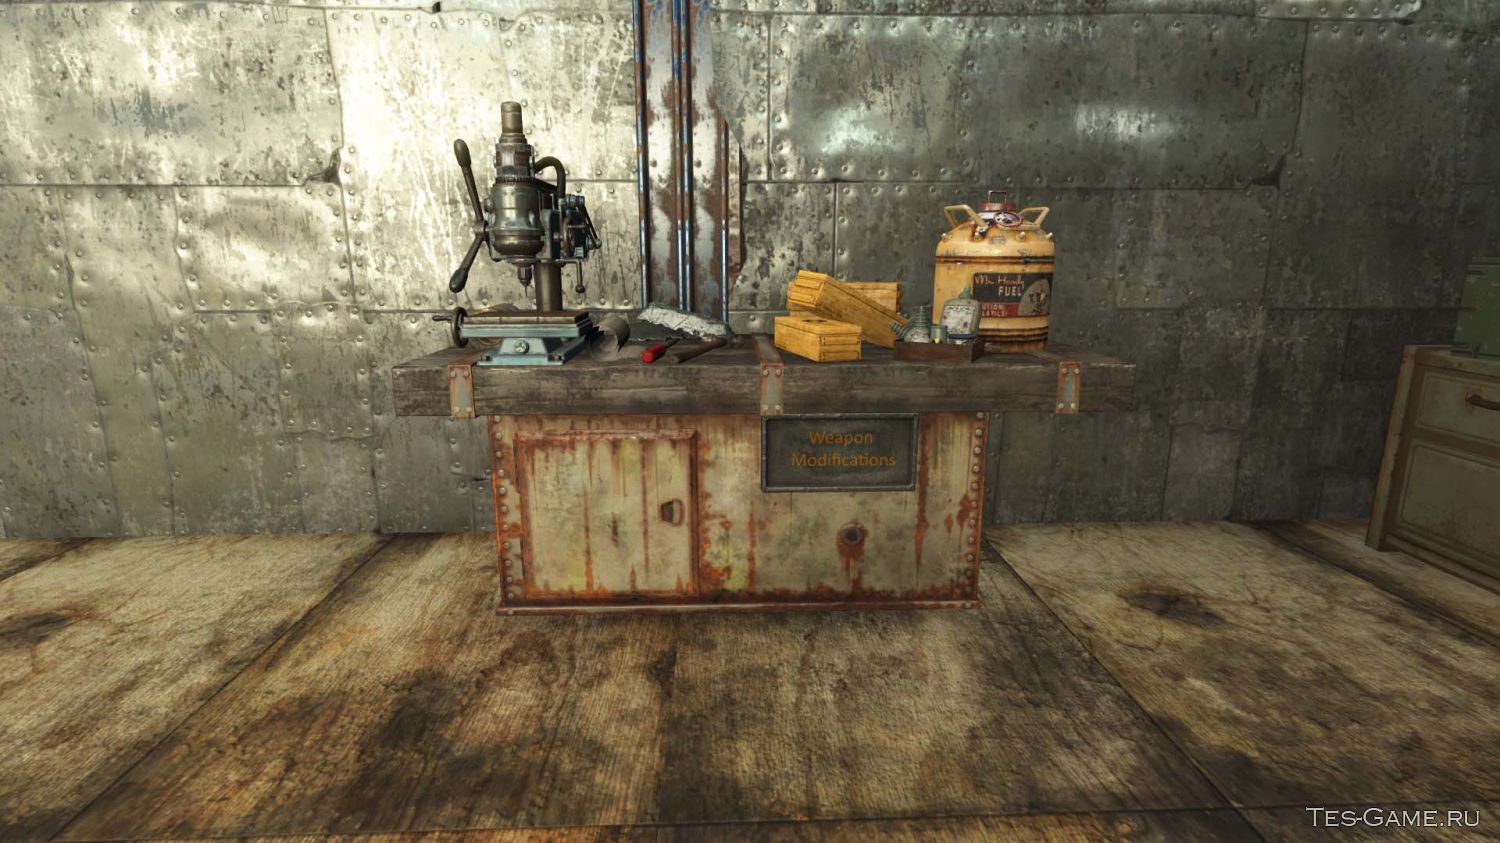 Fallout 4 верстак для роботов все модификации фото 116